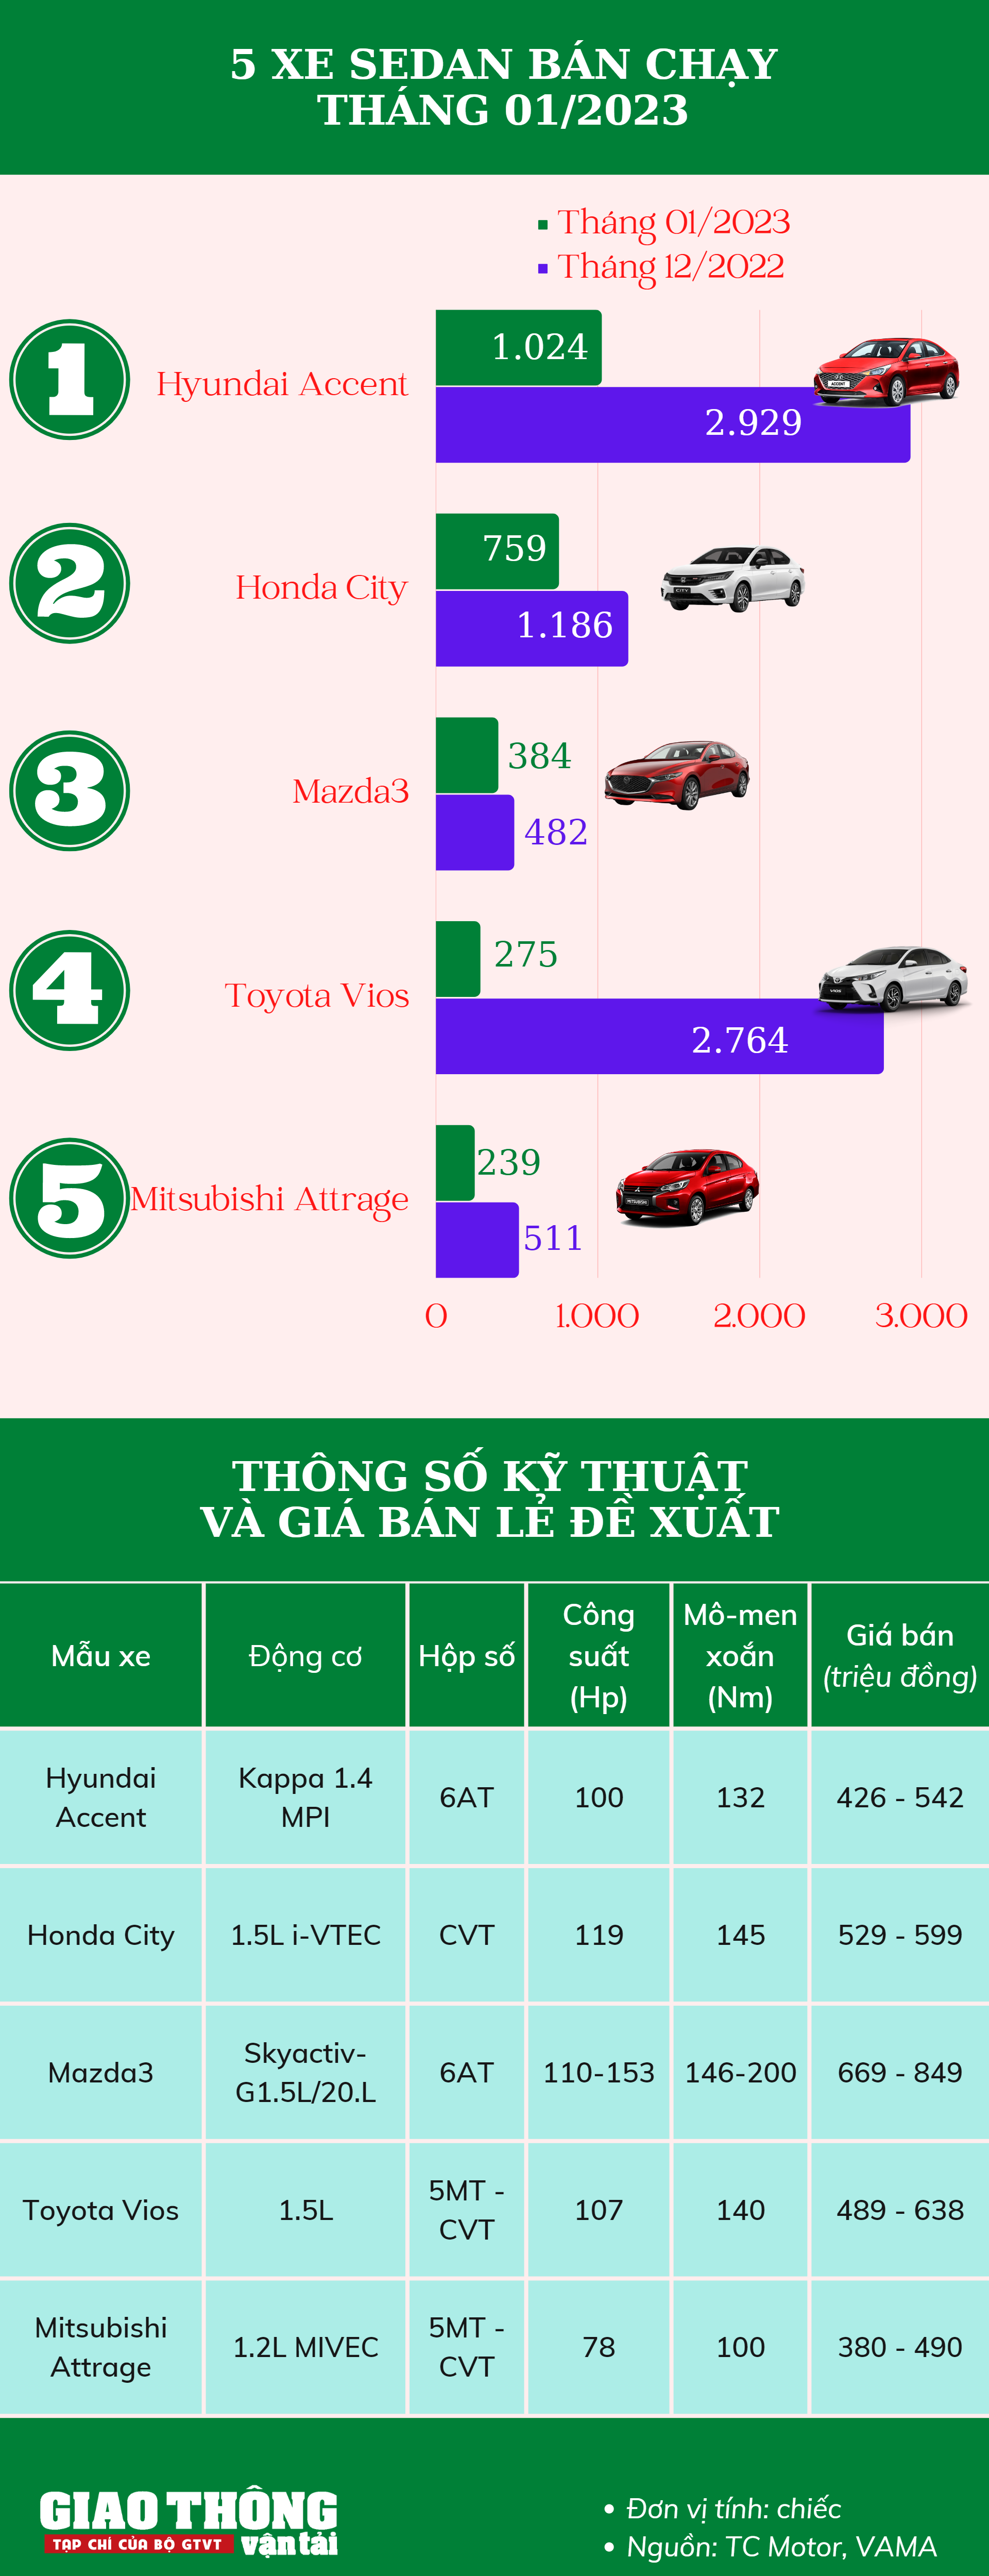 5 xe sedan bán chạy tháng 1/2023: Accent giữ đỉnh, Vios rơi sâu - Ảnh 1.